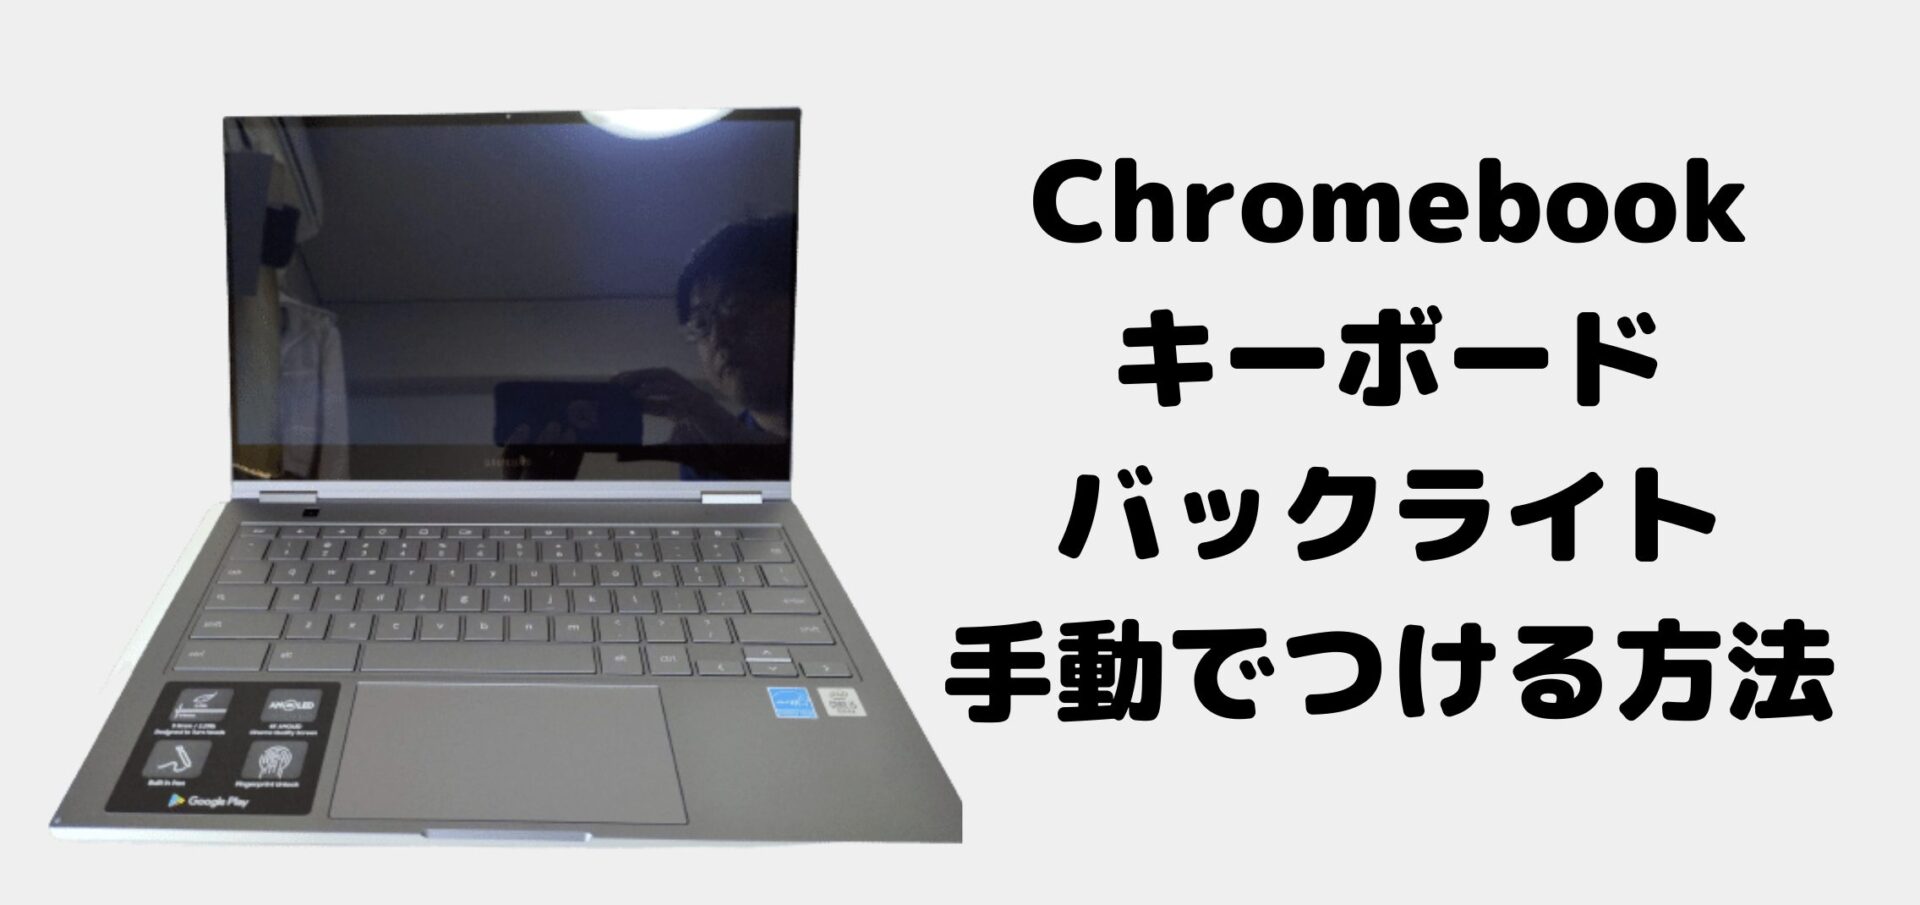 使い方 Chromebookのキーボードバックライトを手動でつける 光らせる 方法 タケマコブログ